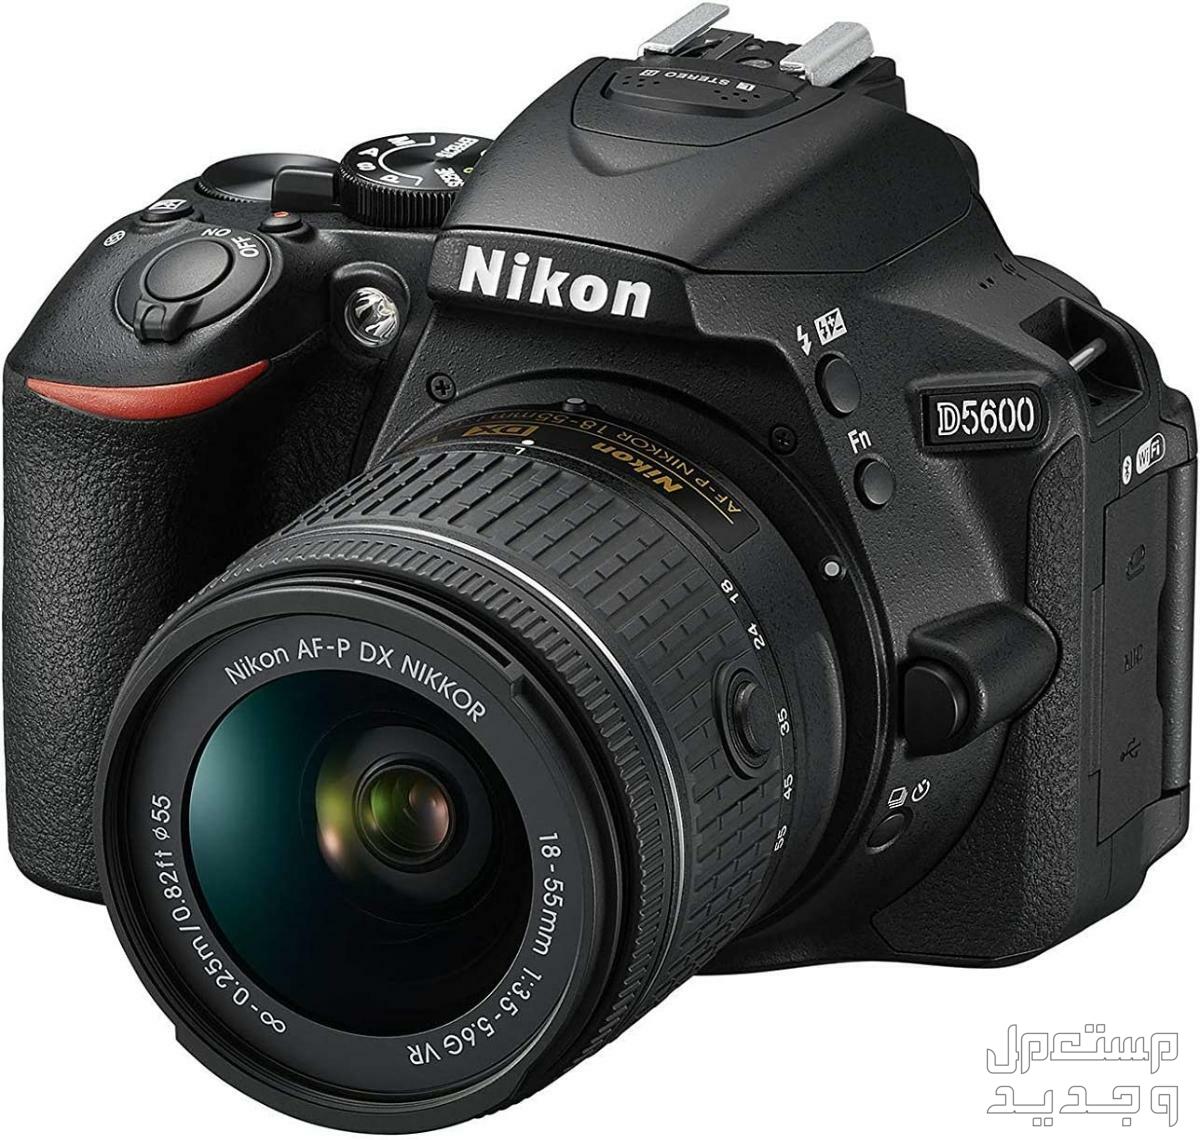 10 كاميرات تصوير ماركات عالمية بأسعار رخيصة في المغرب كاميرا Nikon D5600